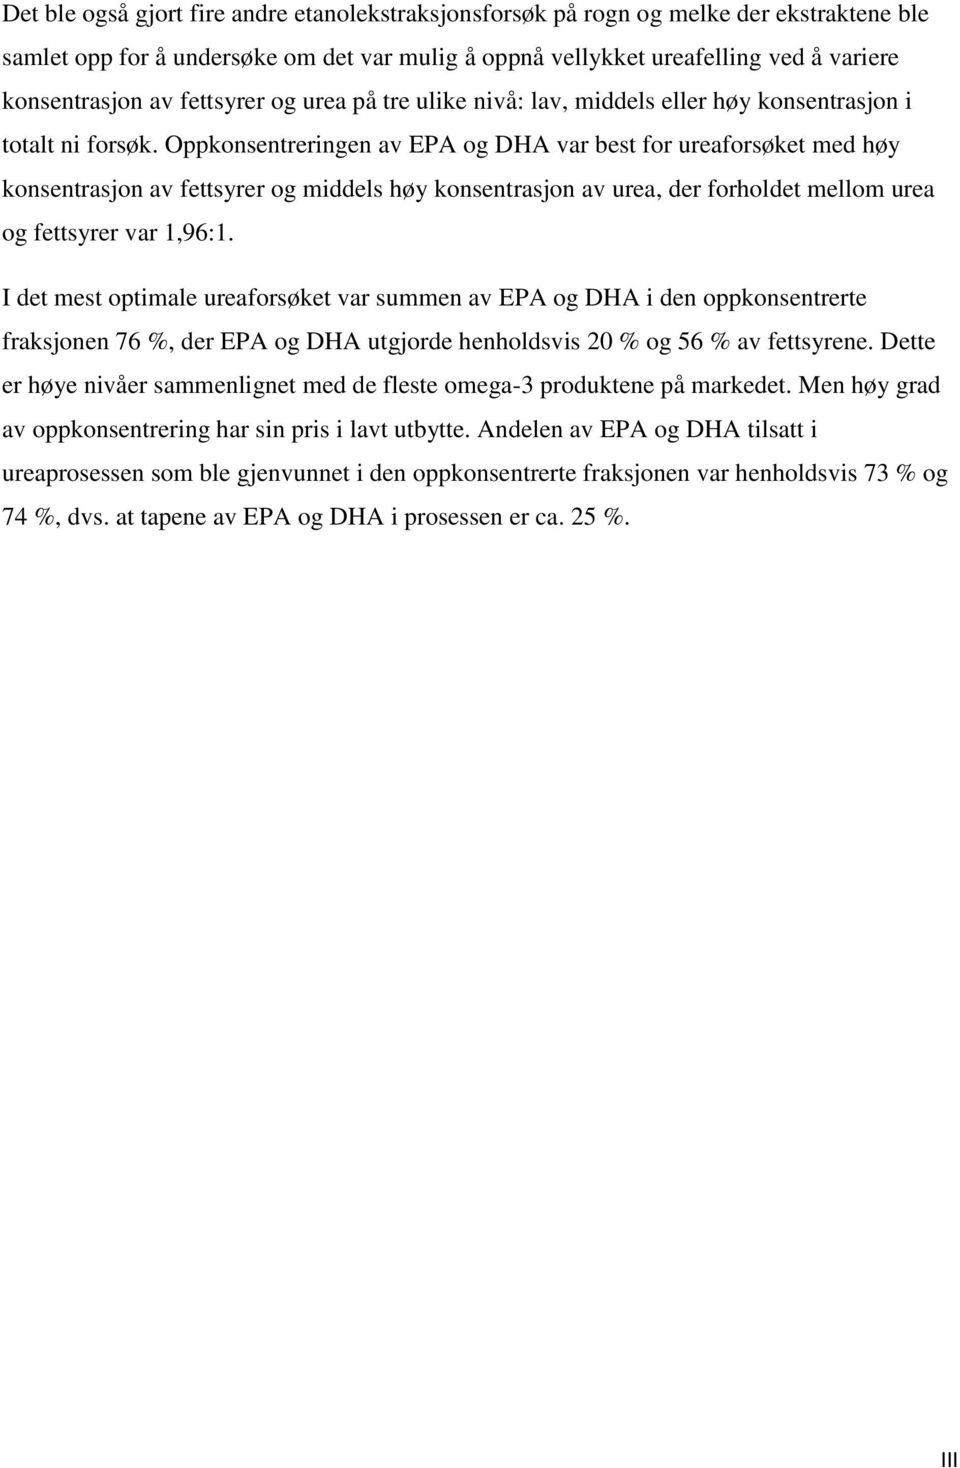 Oppkonsentreringen av EPA og DHA var best for ureaforsøket med høy konsentrasjon av fettsyrer og middels høy konsentrasjon av urea, der forholdet mellom urea og fettsyrer var 1,96:1.